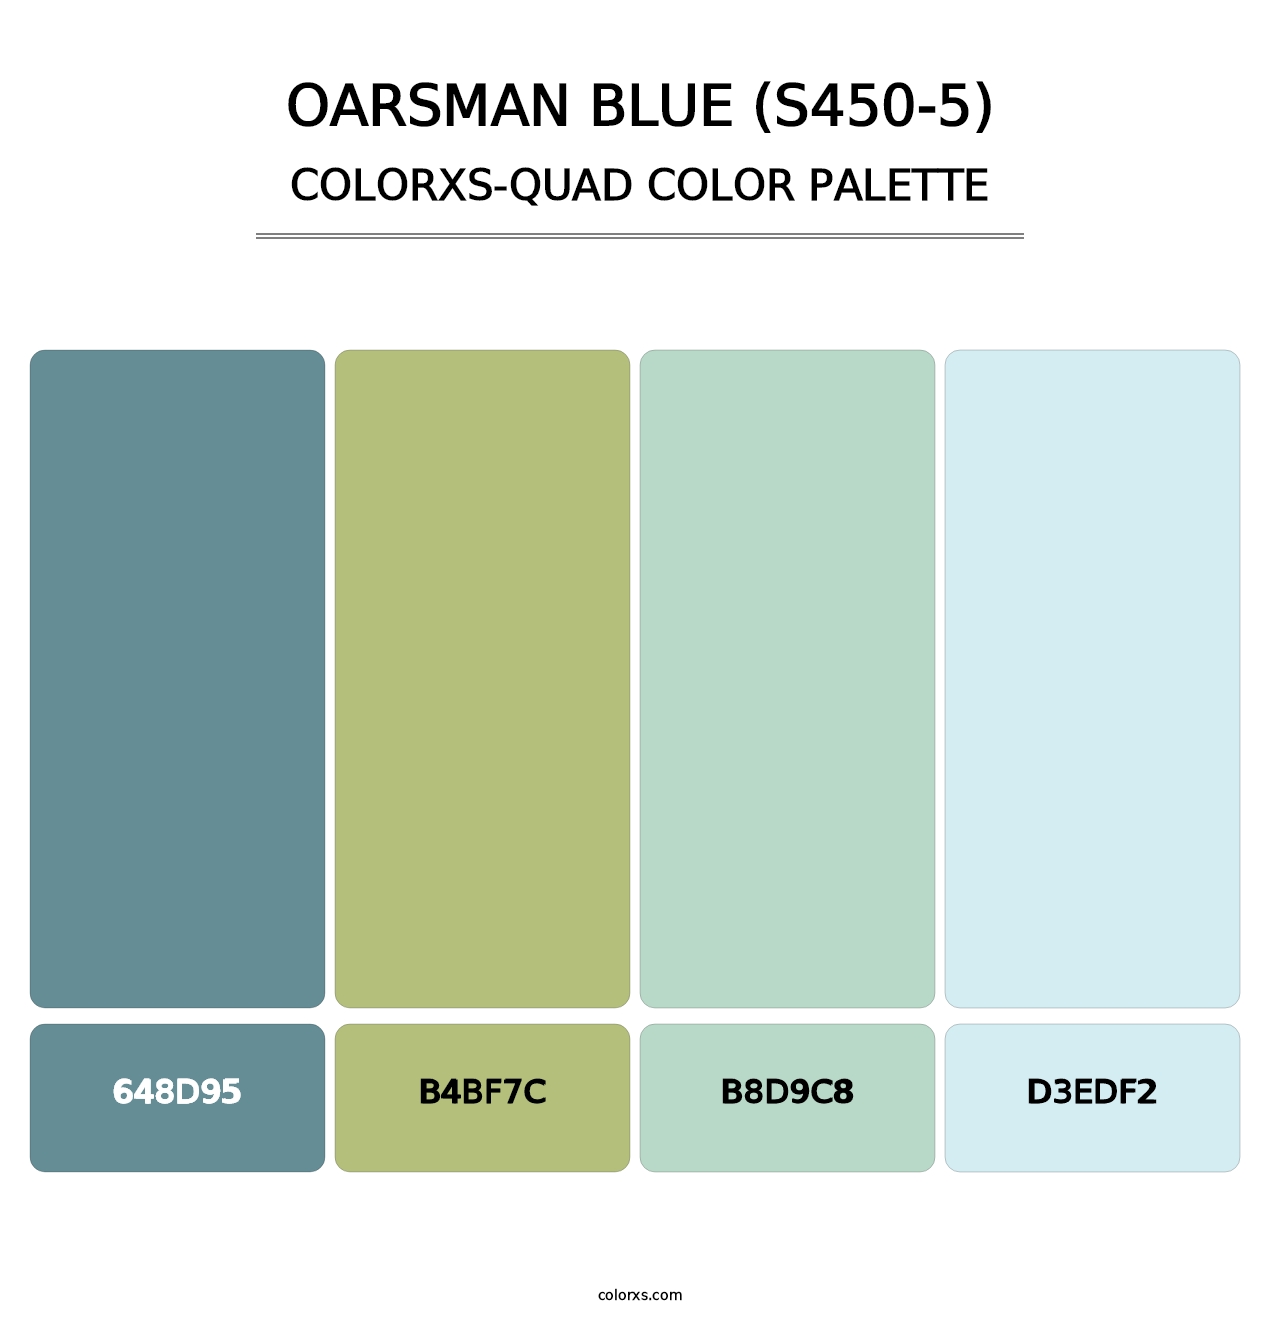 Oarsman Blue (S450-5) - Colorxs Quad Palette